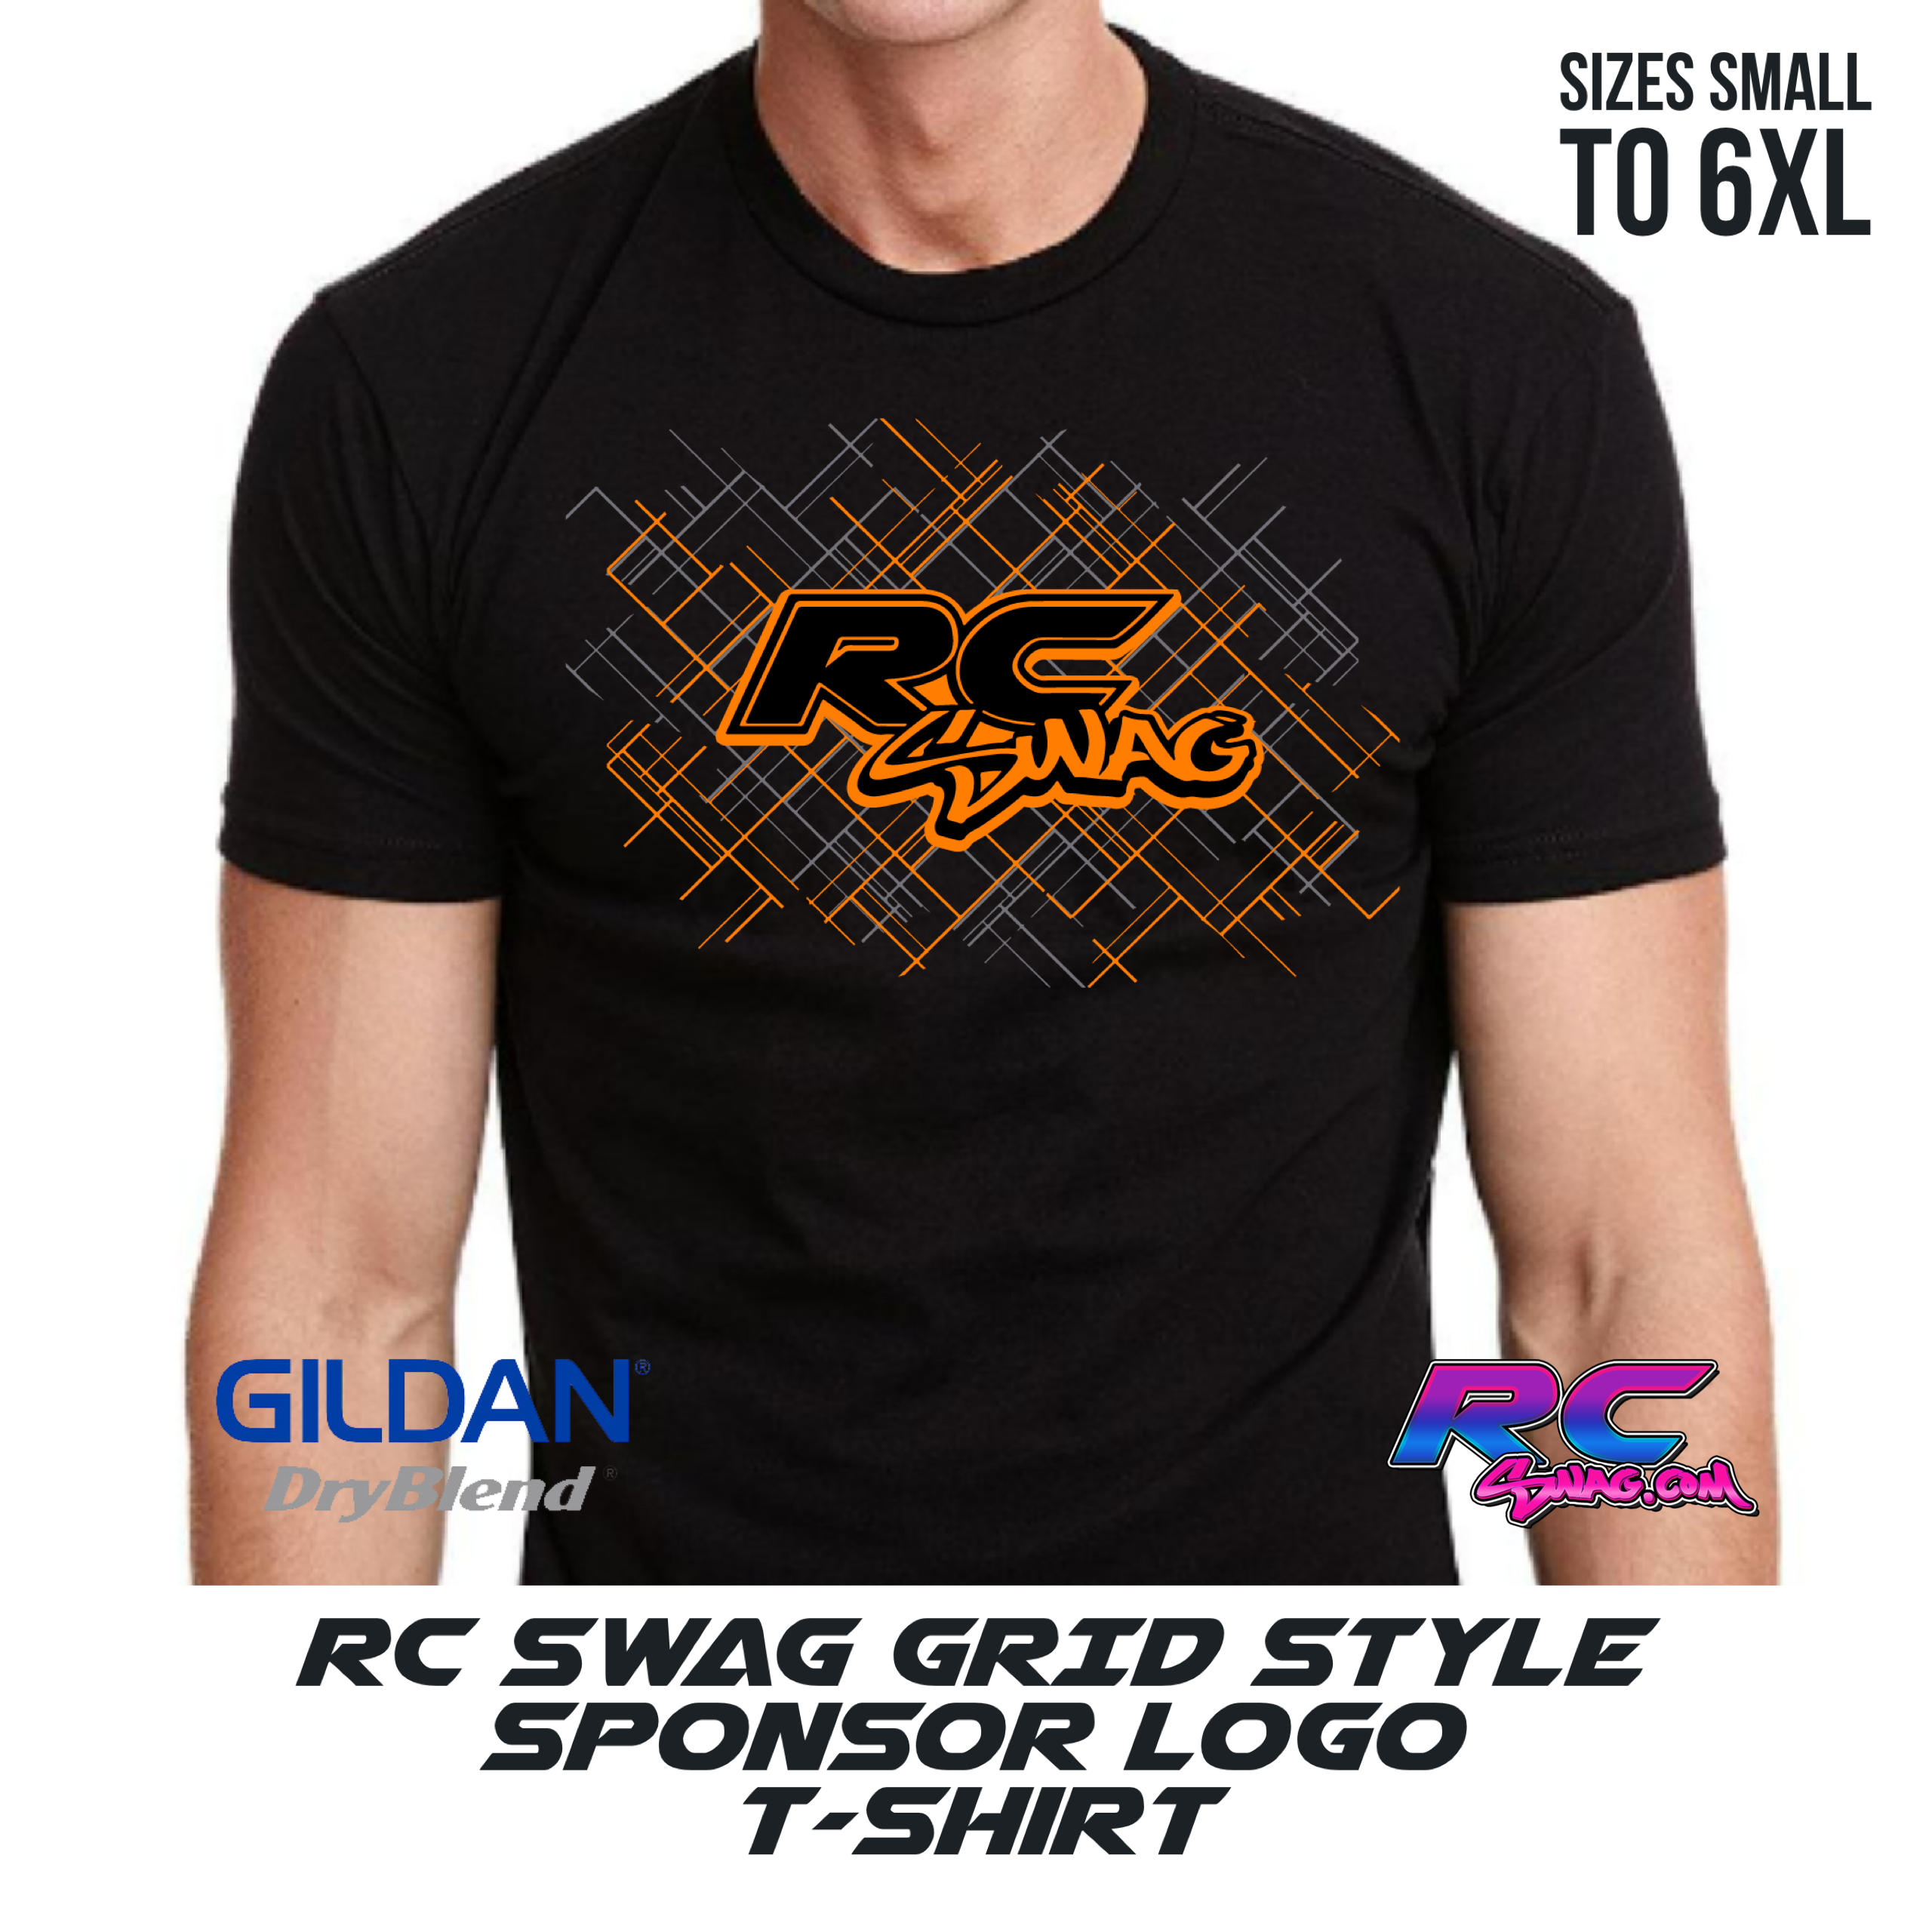 RC SWAG Logo GRID Racing Shirt Orange & Grey - RC SWAG Stickers, T-Shirts, Hoodies, RC Kits & More!